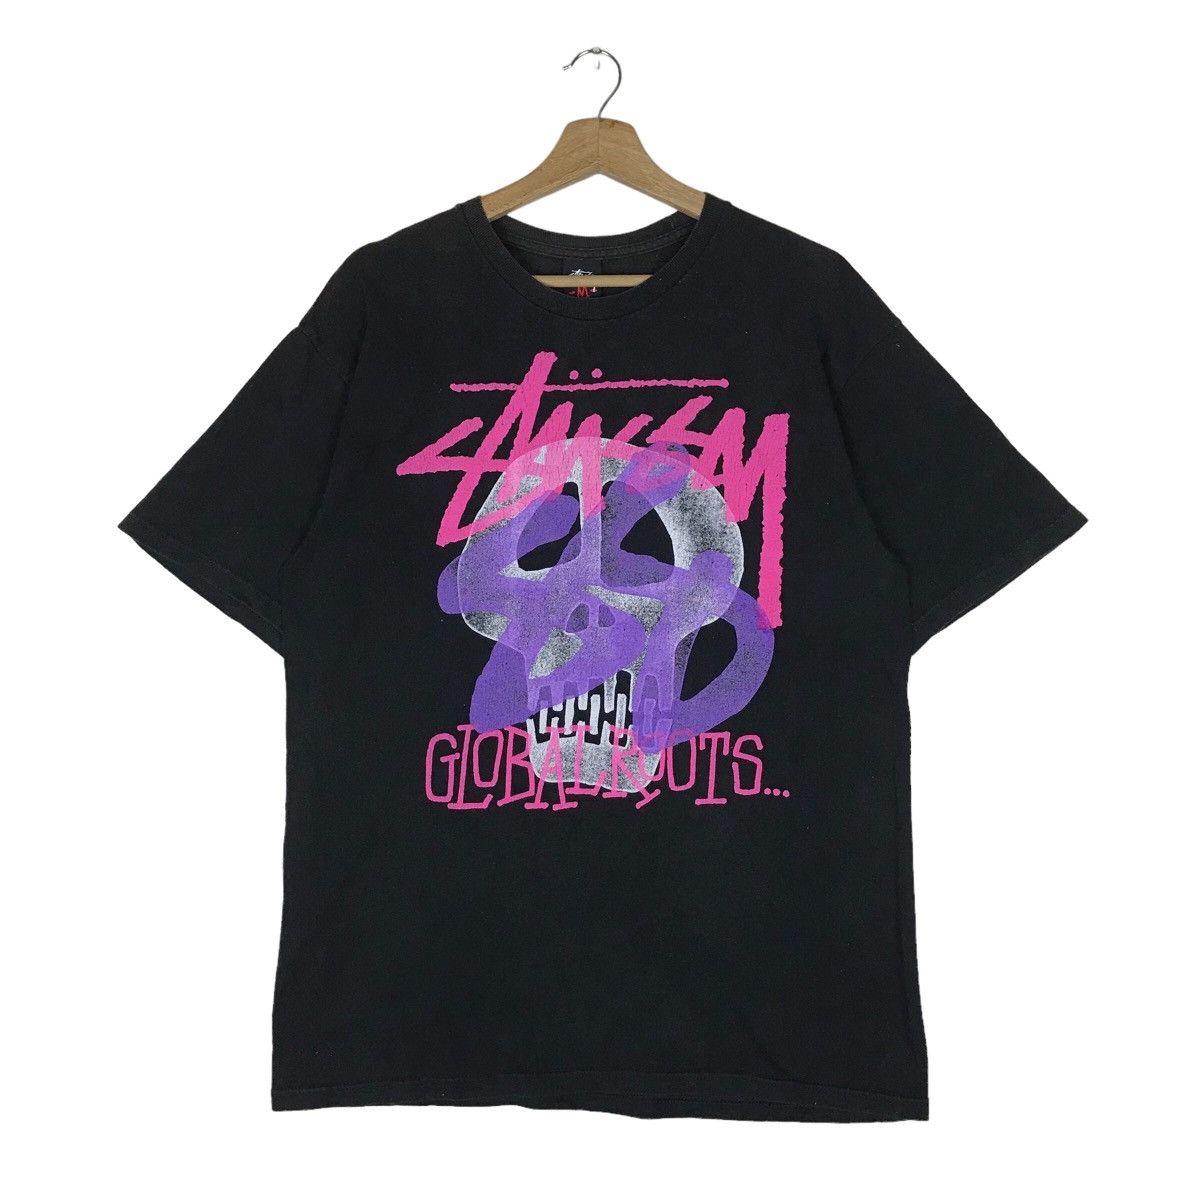 Stussy Skull Sweater | Grailed